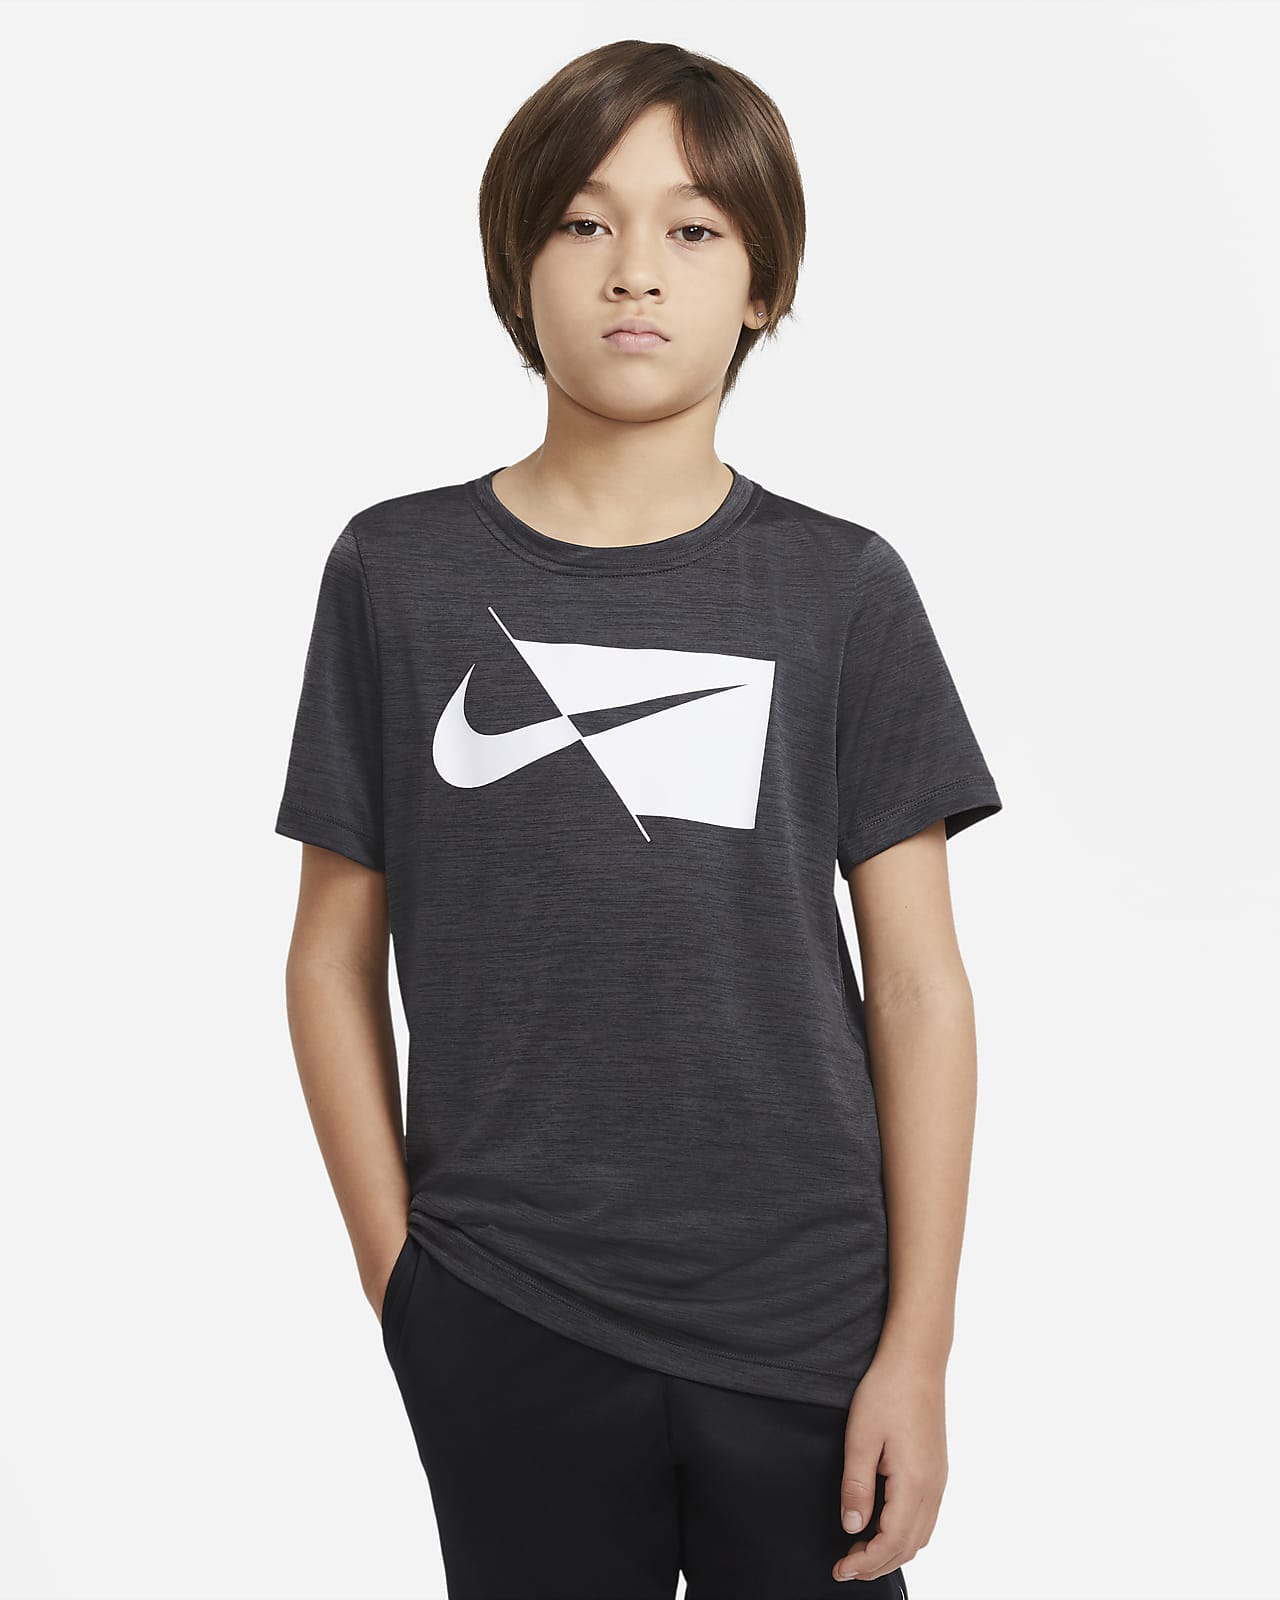 เสื้อเทรนนิ่งแขนสั้นเด็กโต Nike (ชาย)